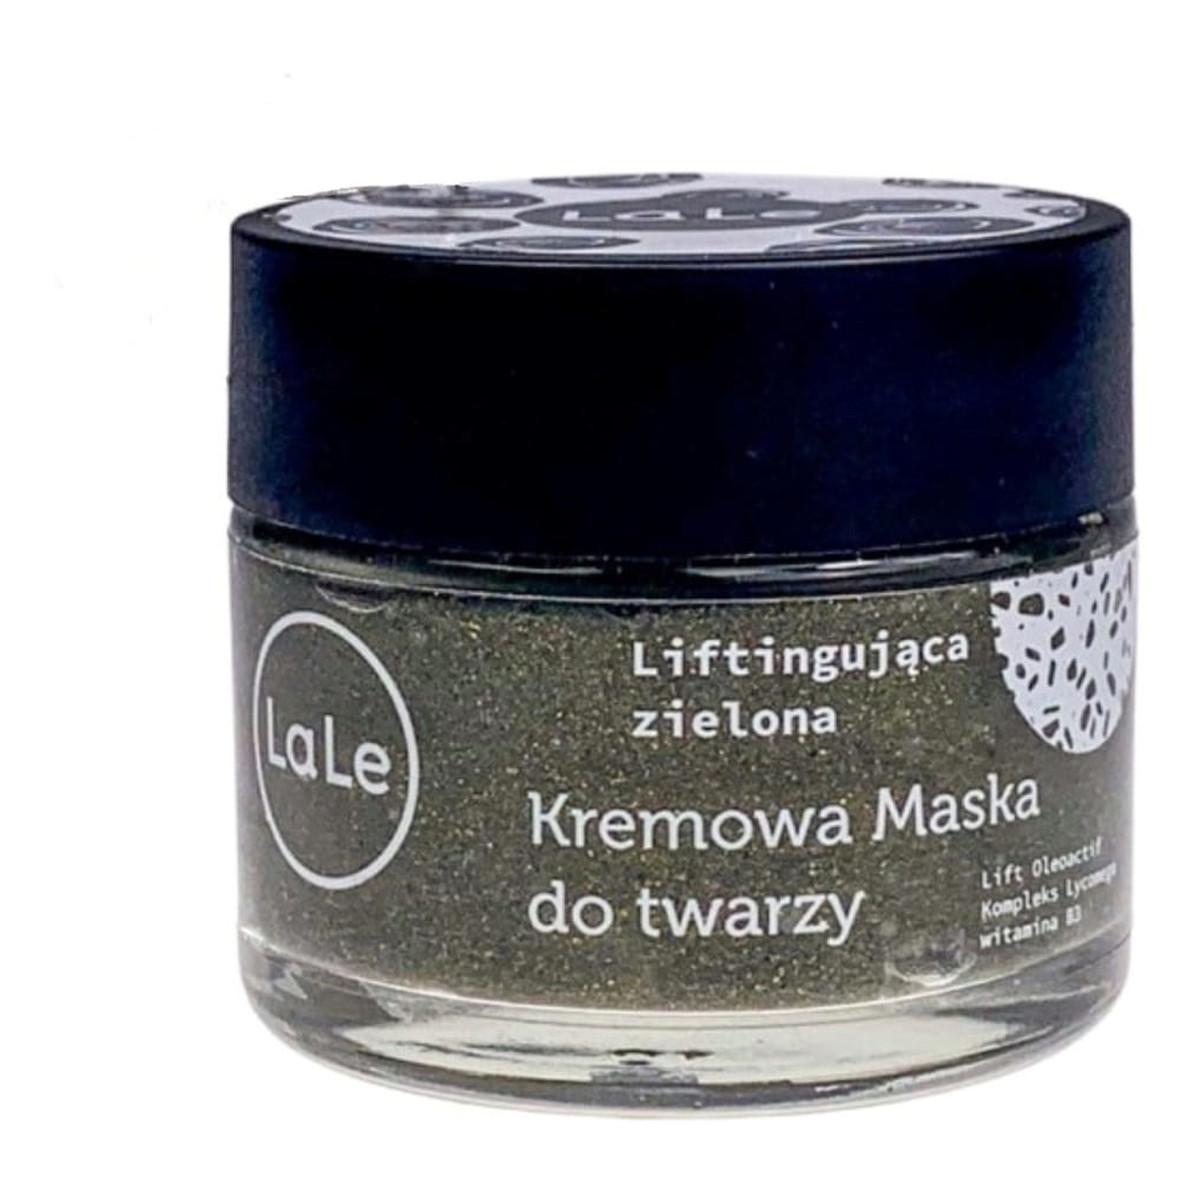 La-Le Kremowa maska do twarzy liftingująca zielona 50ml